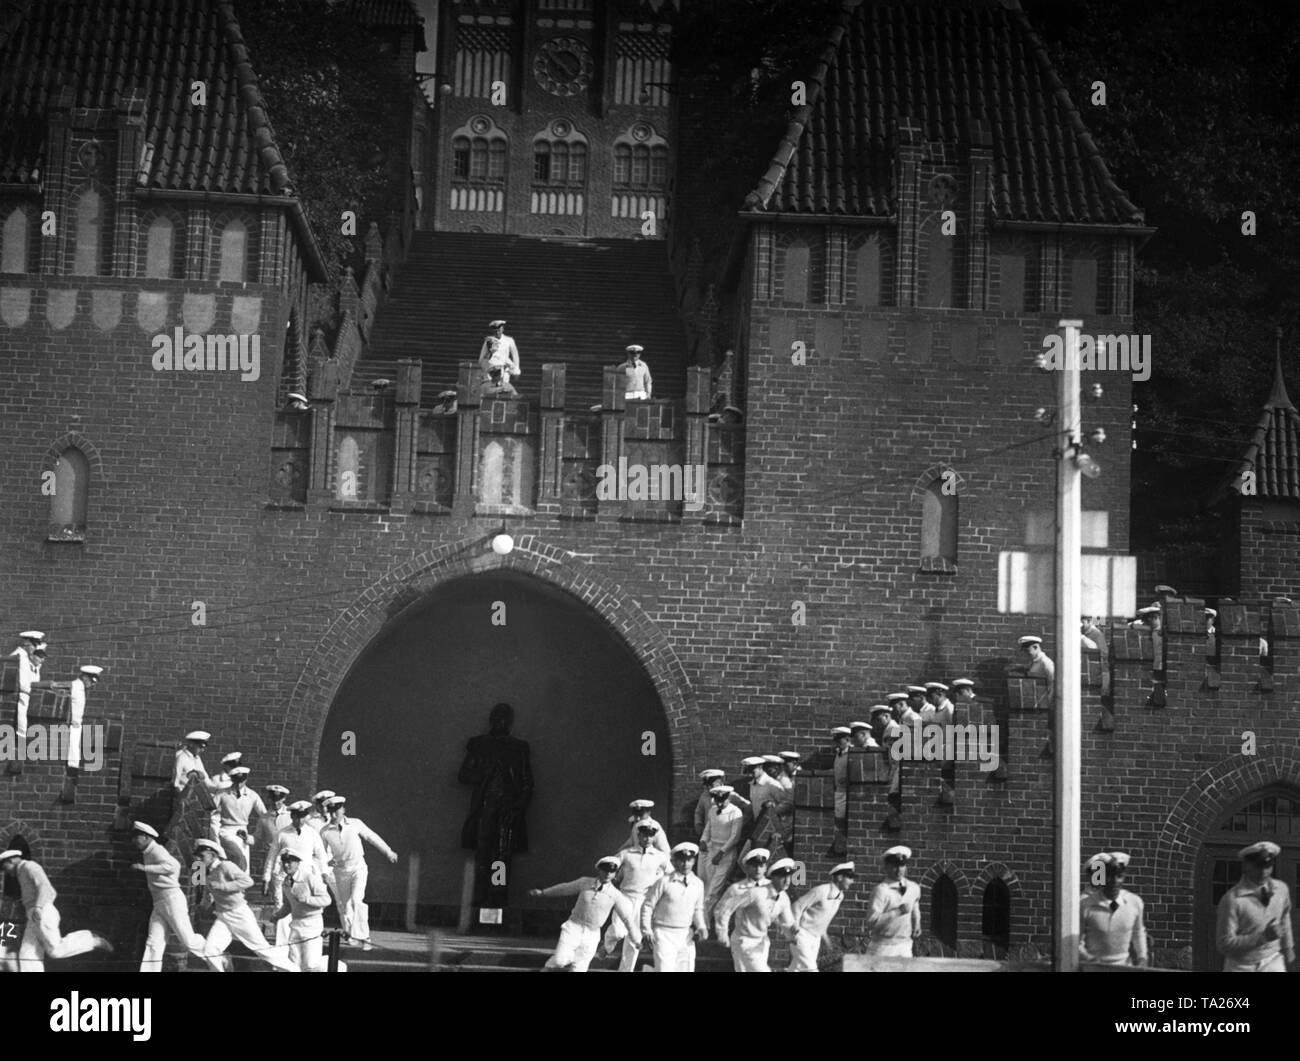 Studenten der Naval Academy in Muerwik in Flensburg laufen die Treppe hinunter. Es ist wahrscheinlich ein Bild von der NS-Propaganda Film "Kameraden auf See" von 1938. Stockfoto